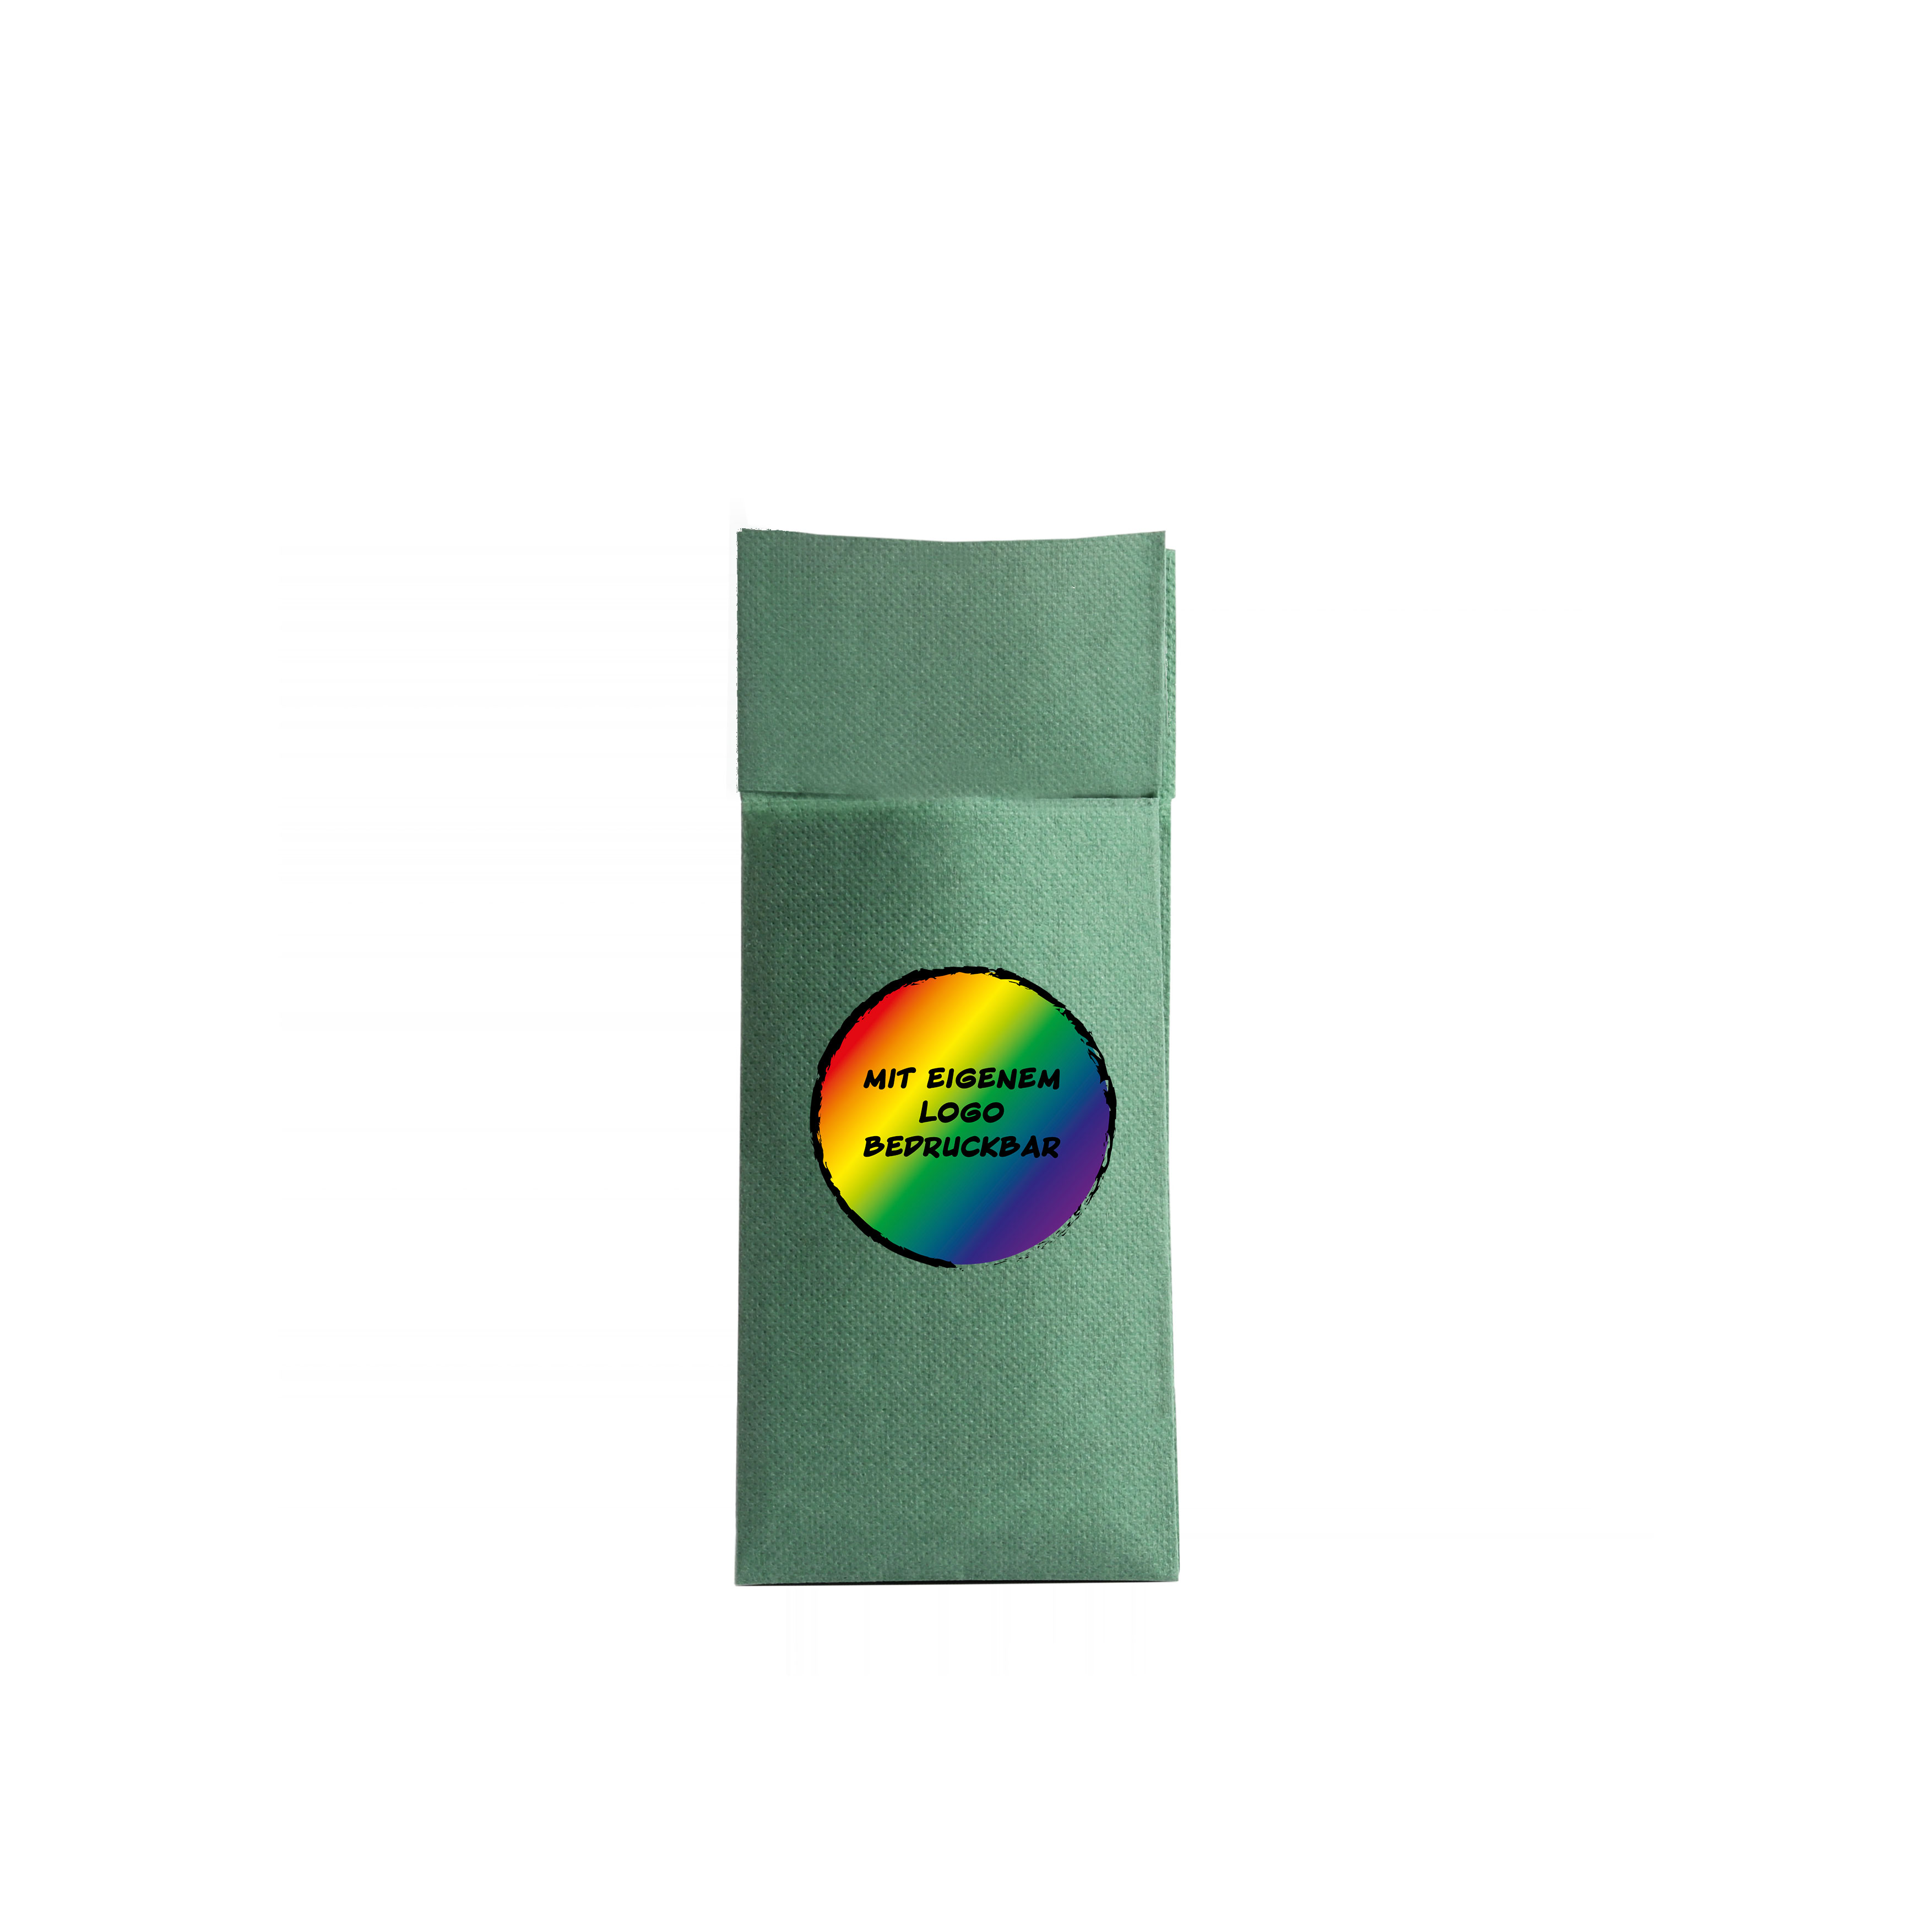 Bestecktaschen "Soft Napkin", 32 x 38 cm, versch. Farben, 50 Stk/Pkg, individuelle Gestaltung